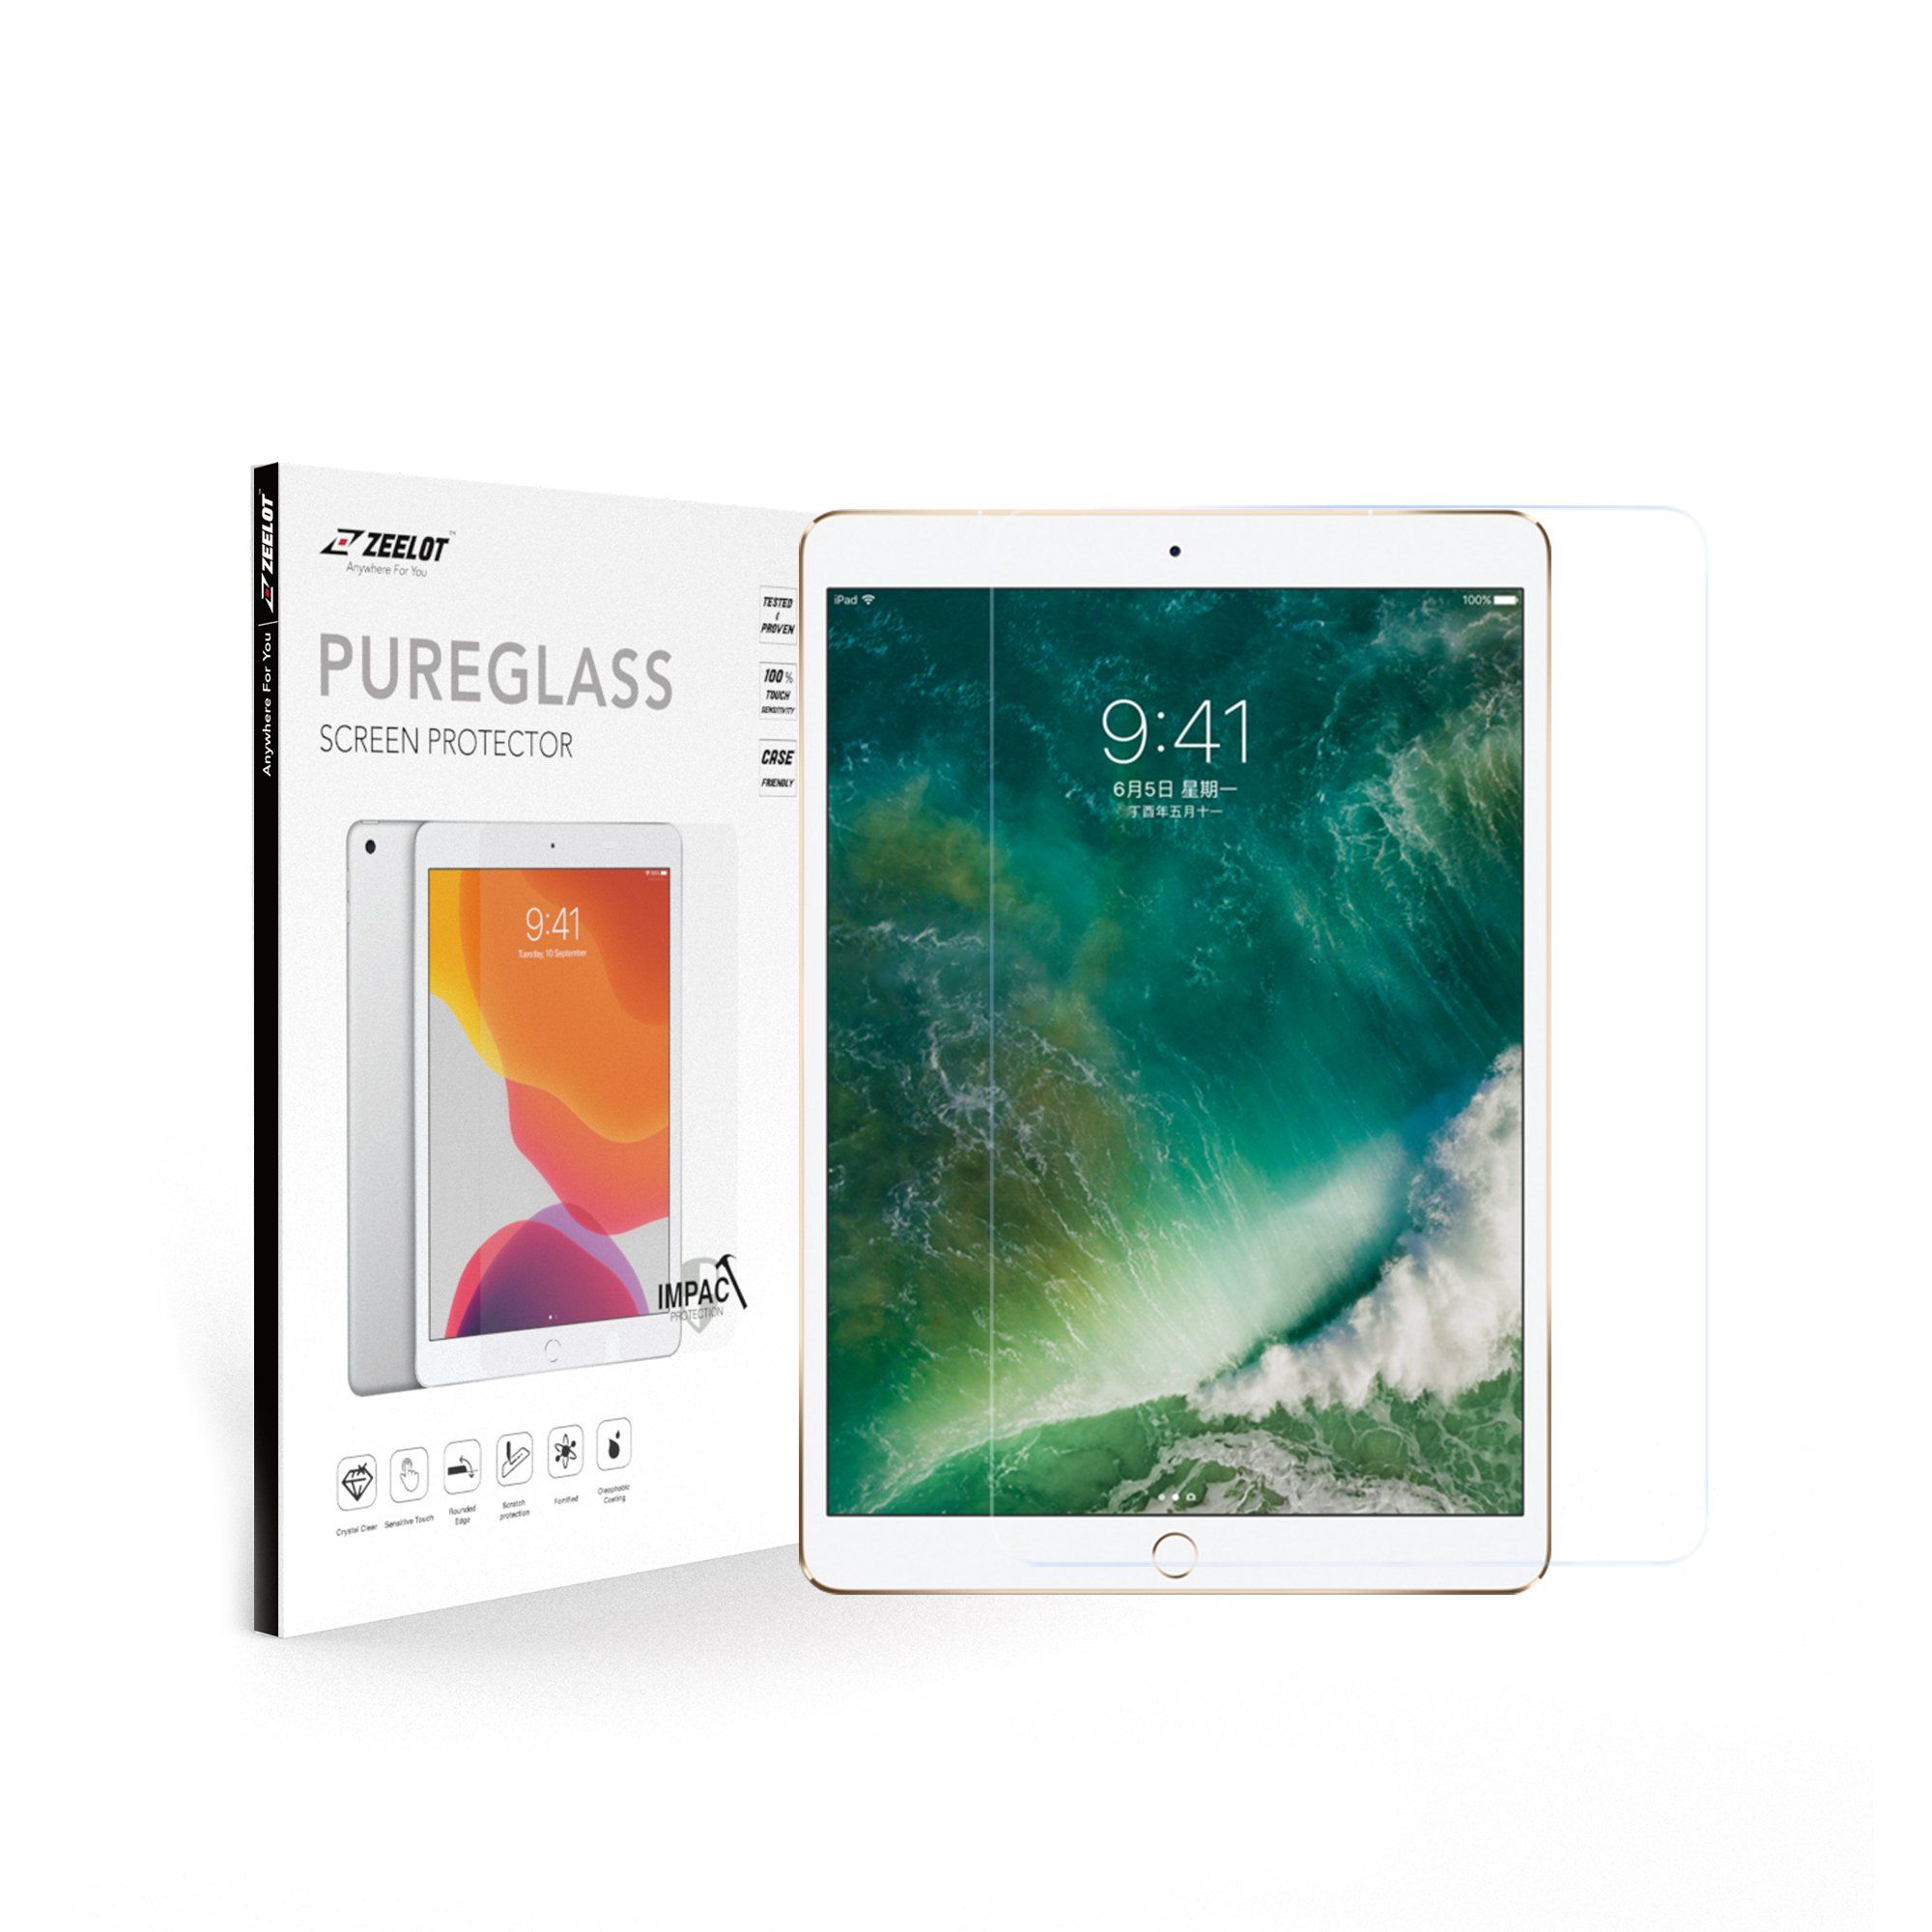 ZEELOT PureGlass 2.5D Tempered Glass Screen Protector for iPad Pro 12.9" (2017/2015), Clear Tempered Glass ZEELOT 